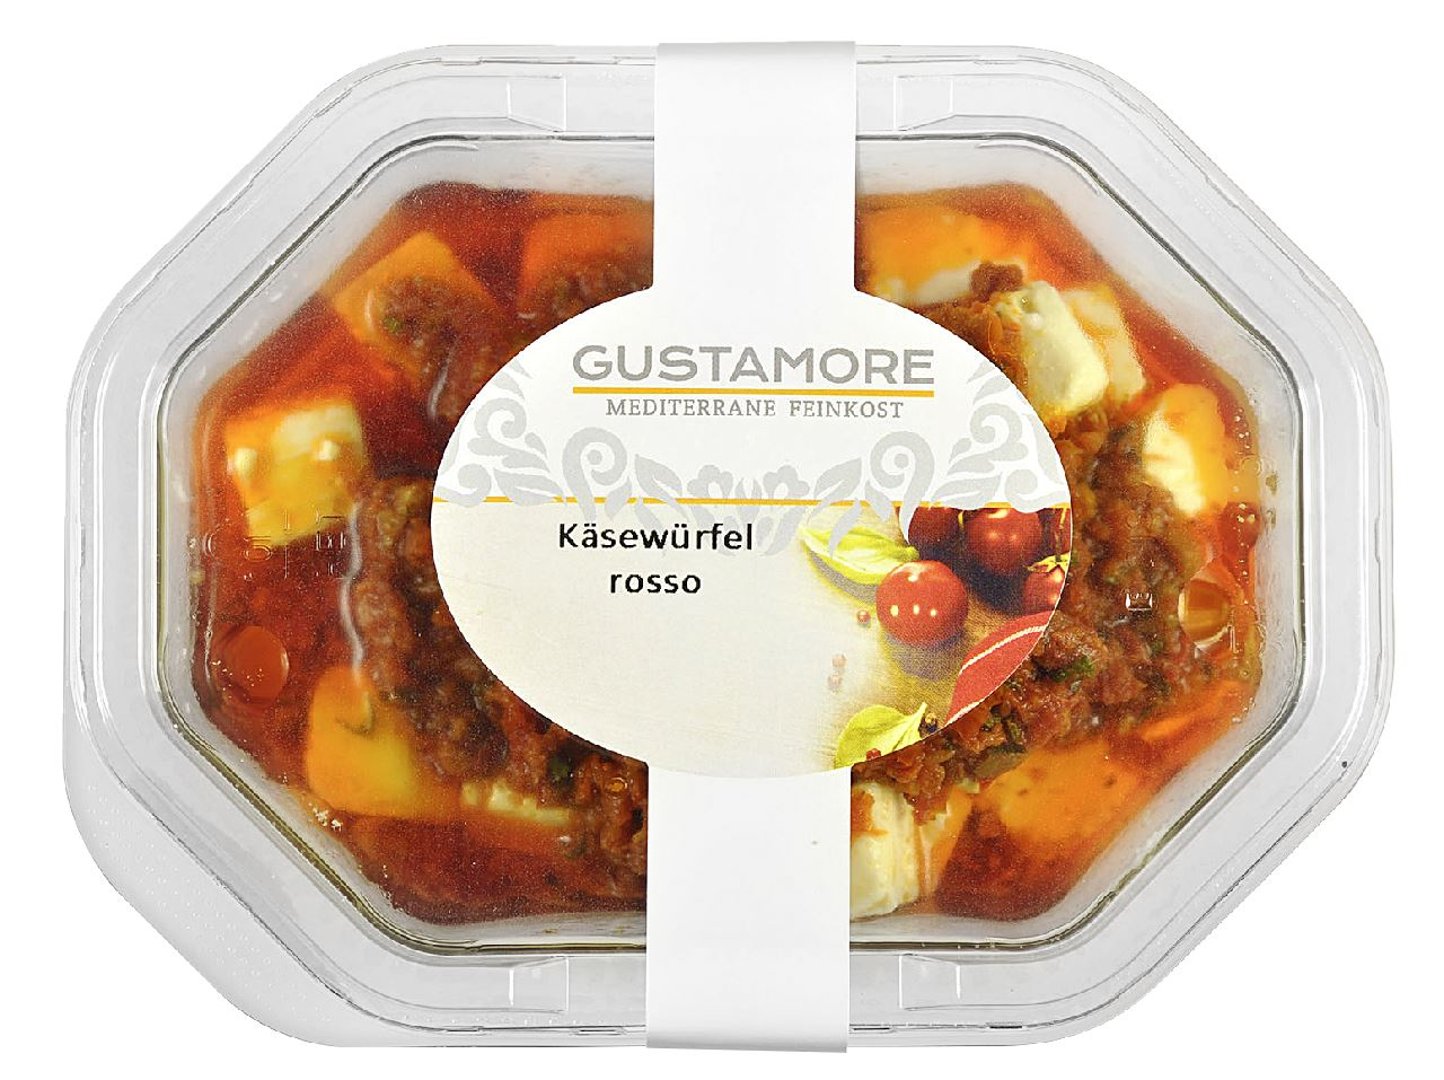 Gustamore - Fetawürfel rosso in Tomaten-Peperoni-Paste, in Öl - 160 g Schale